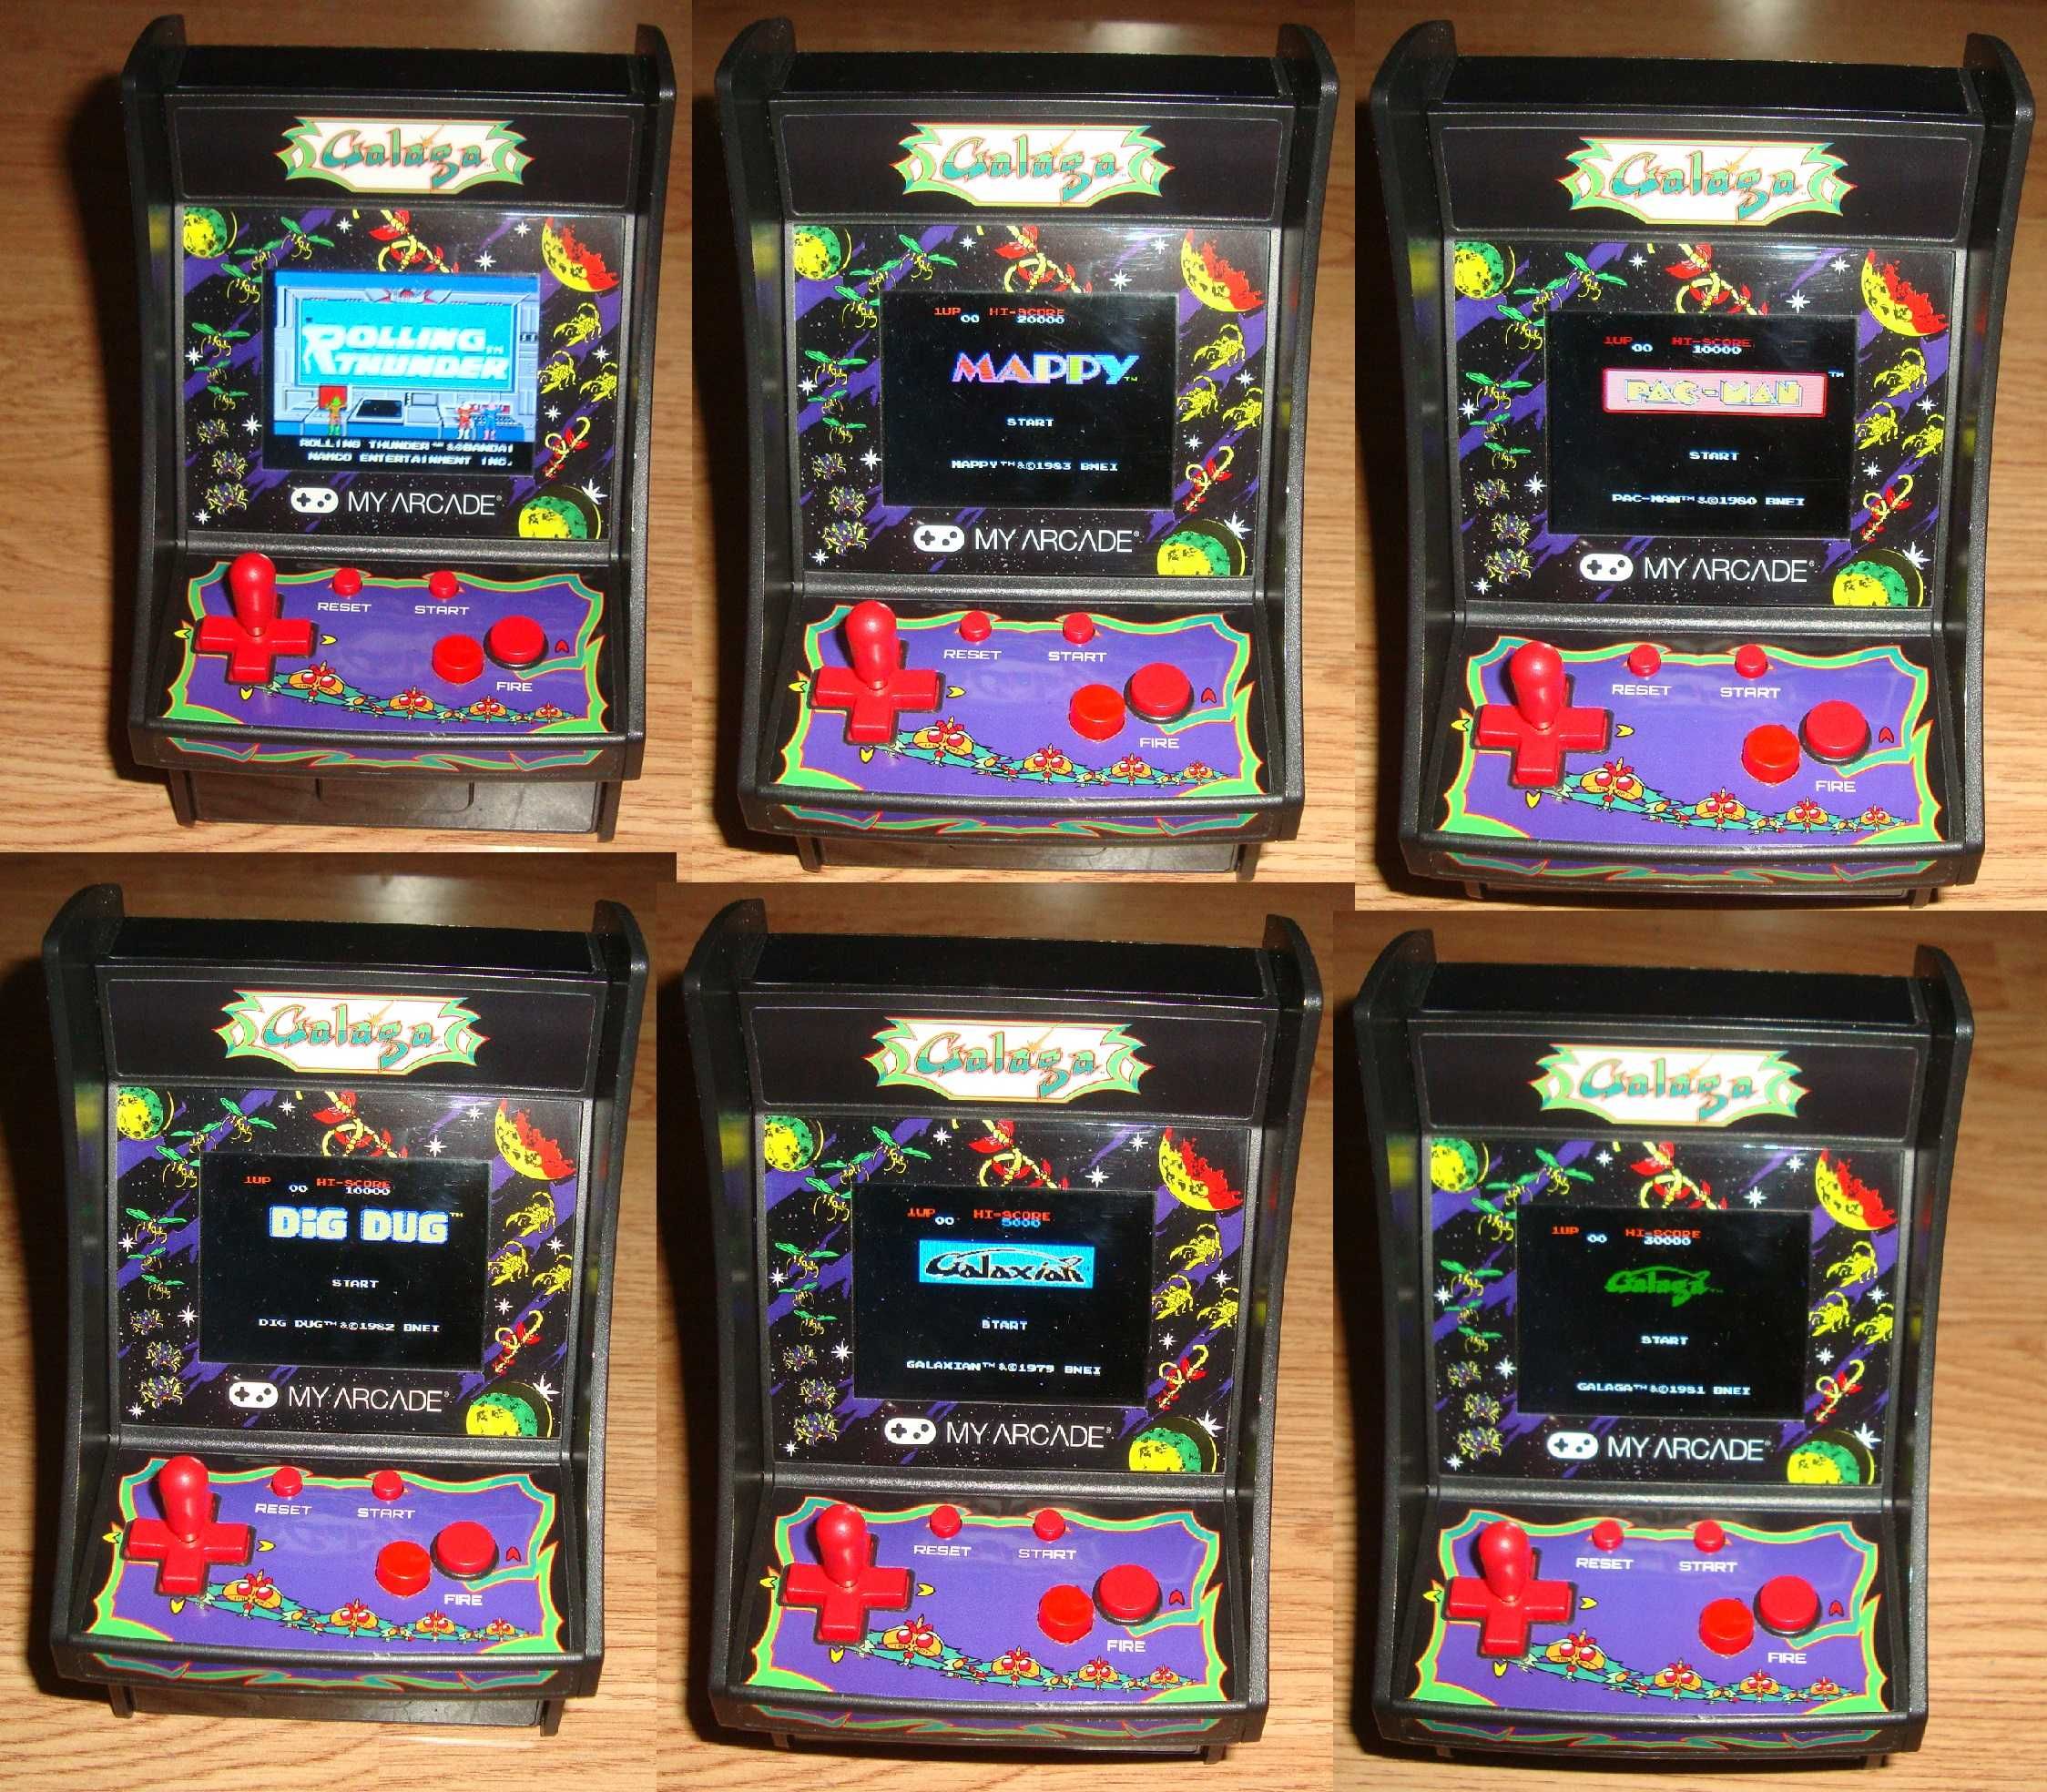 Mini Arcade Galaga Portabil My Arcade Modificata 6 jocuri in loc de 1